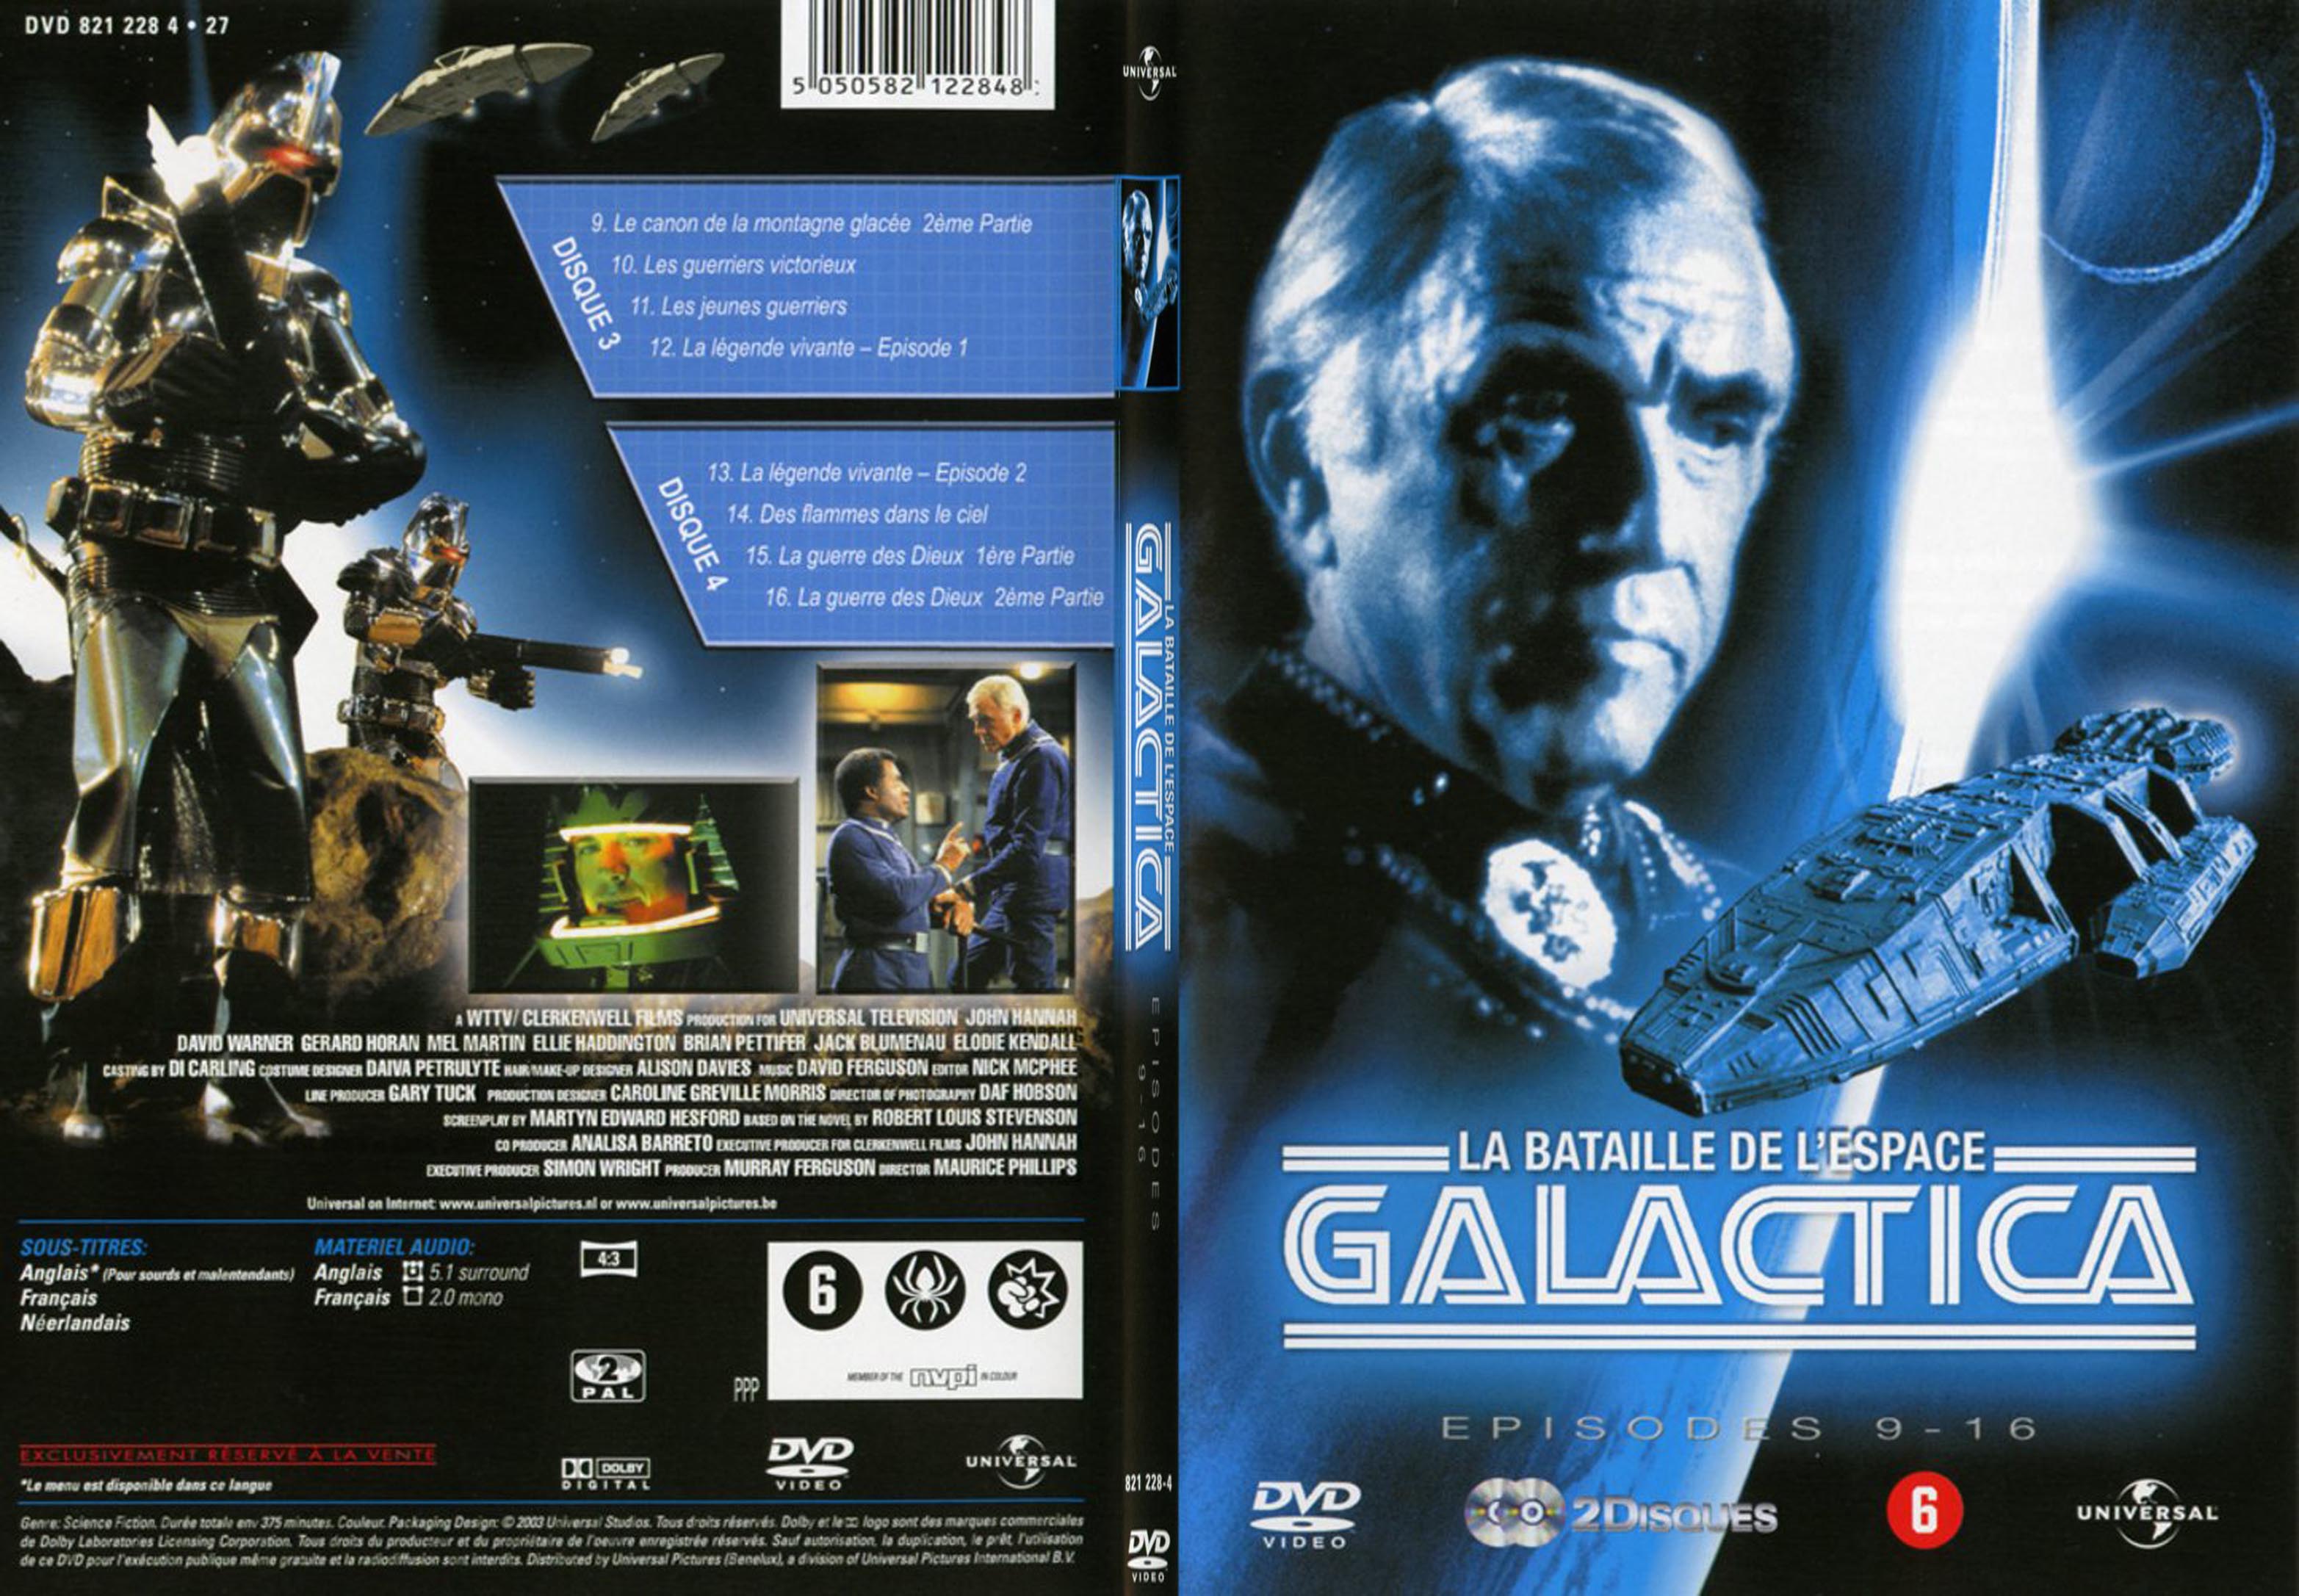 Jaquette DVD Galactica saison 1 vol 2 - SLIM